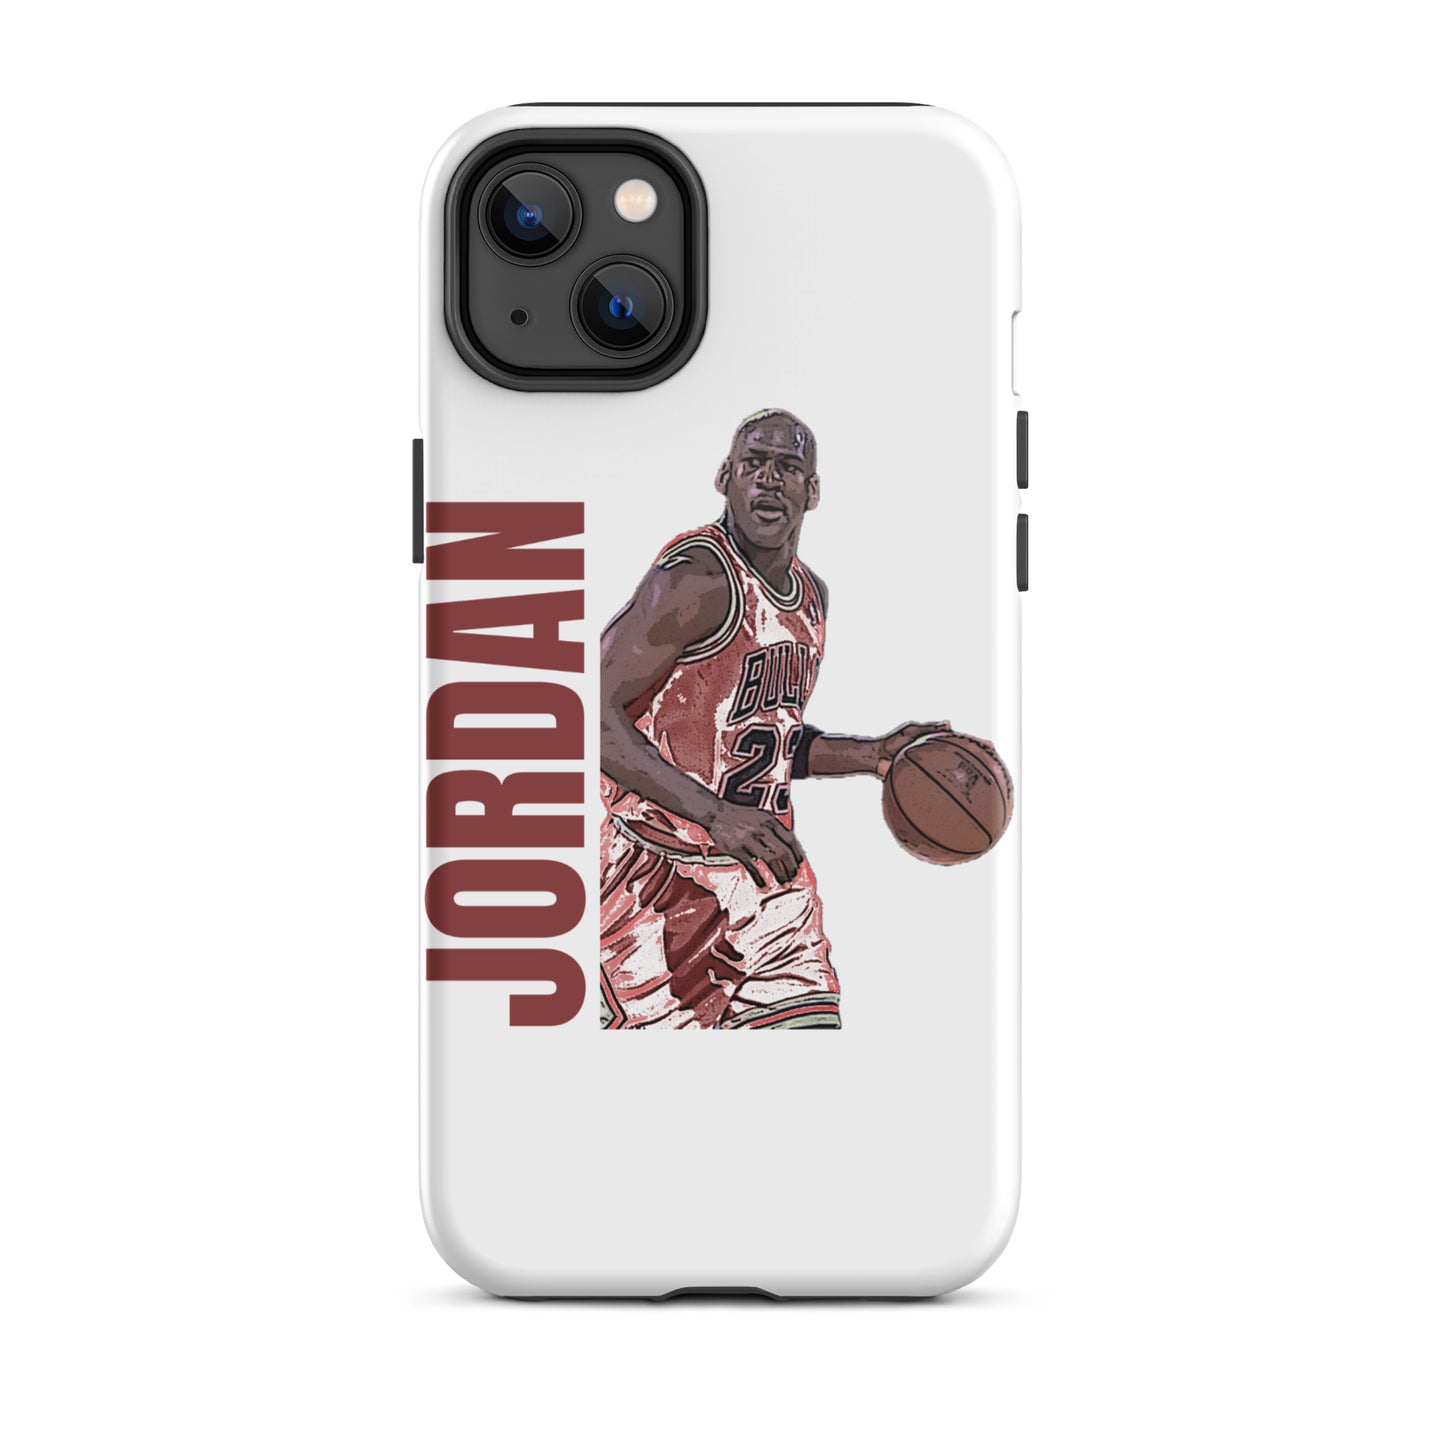 Jordan iPhone case